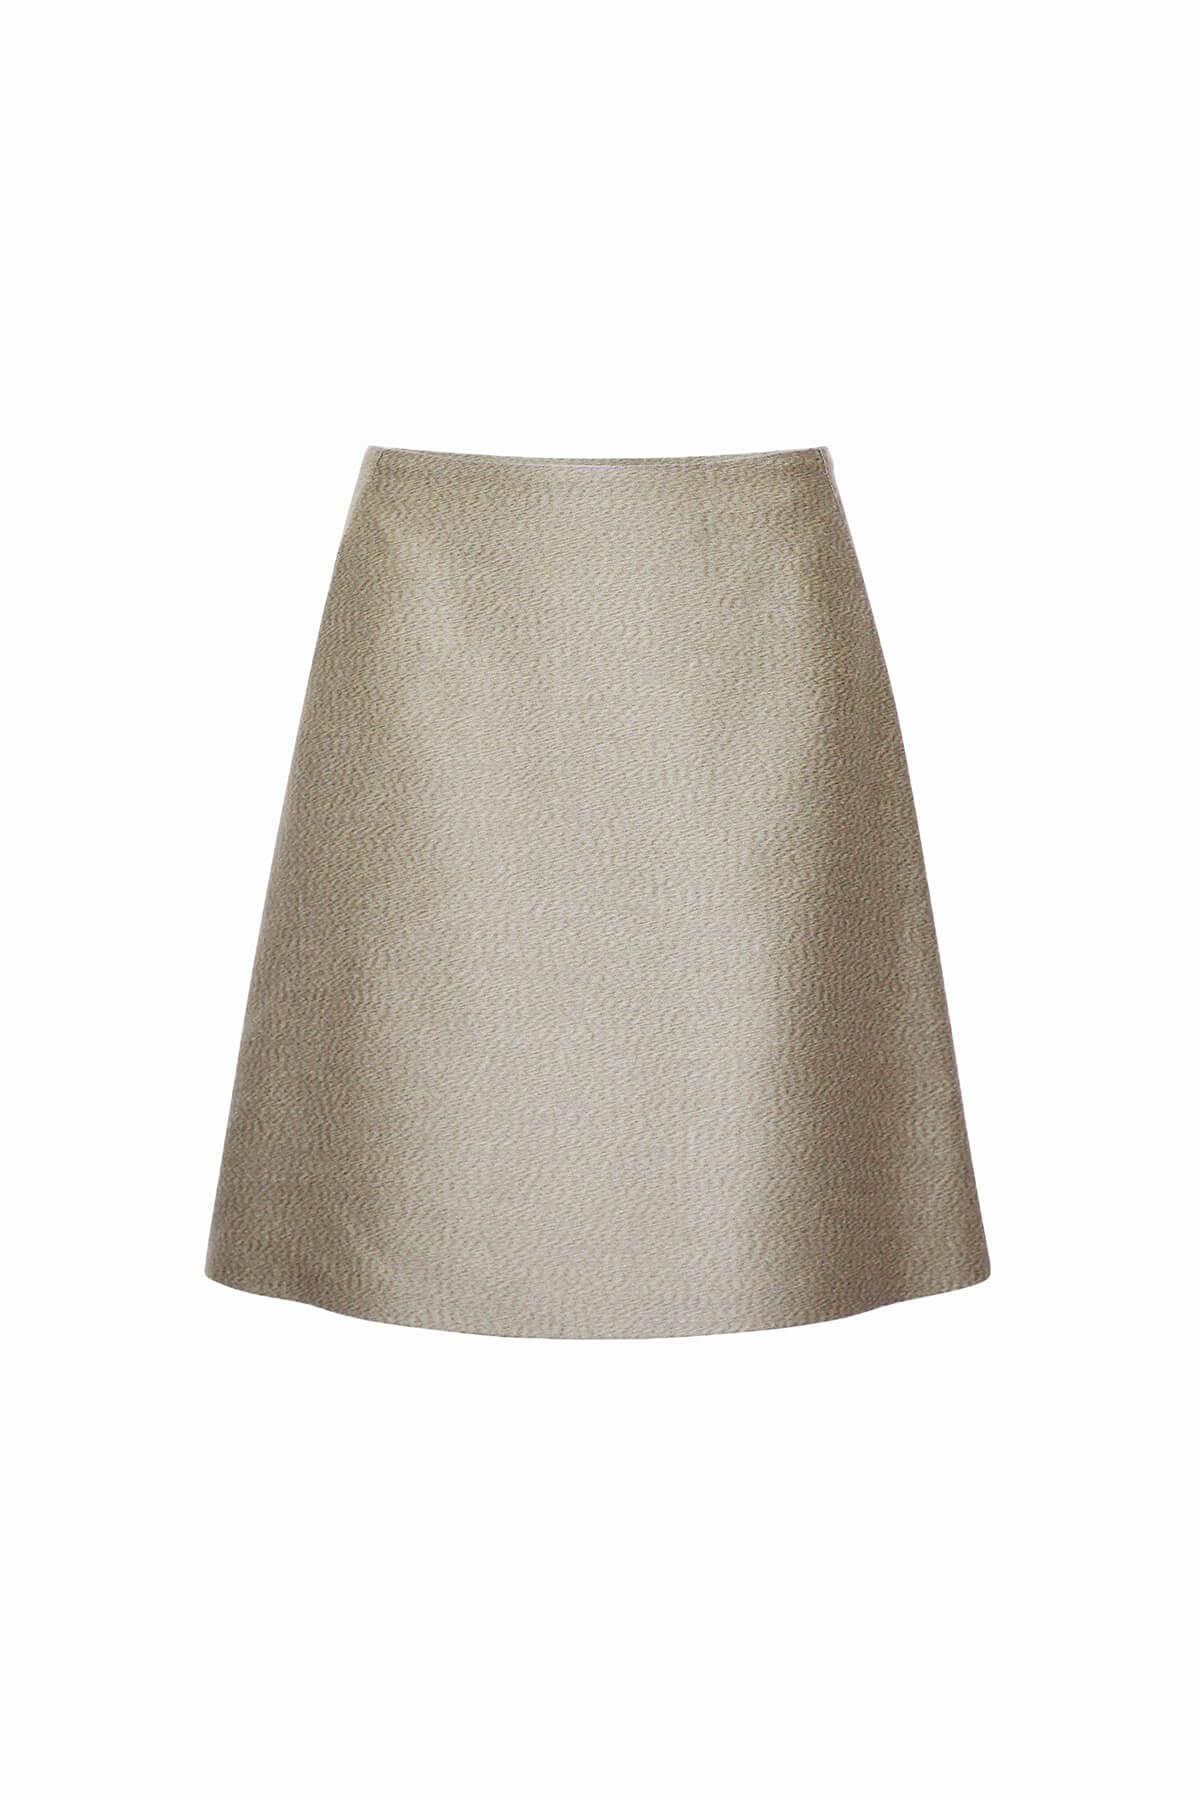 Woven Skirt - Ivory